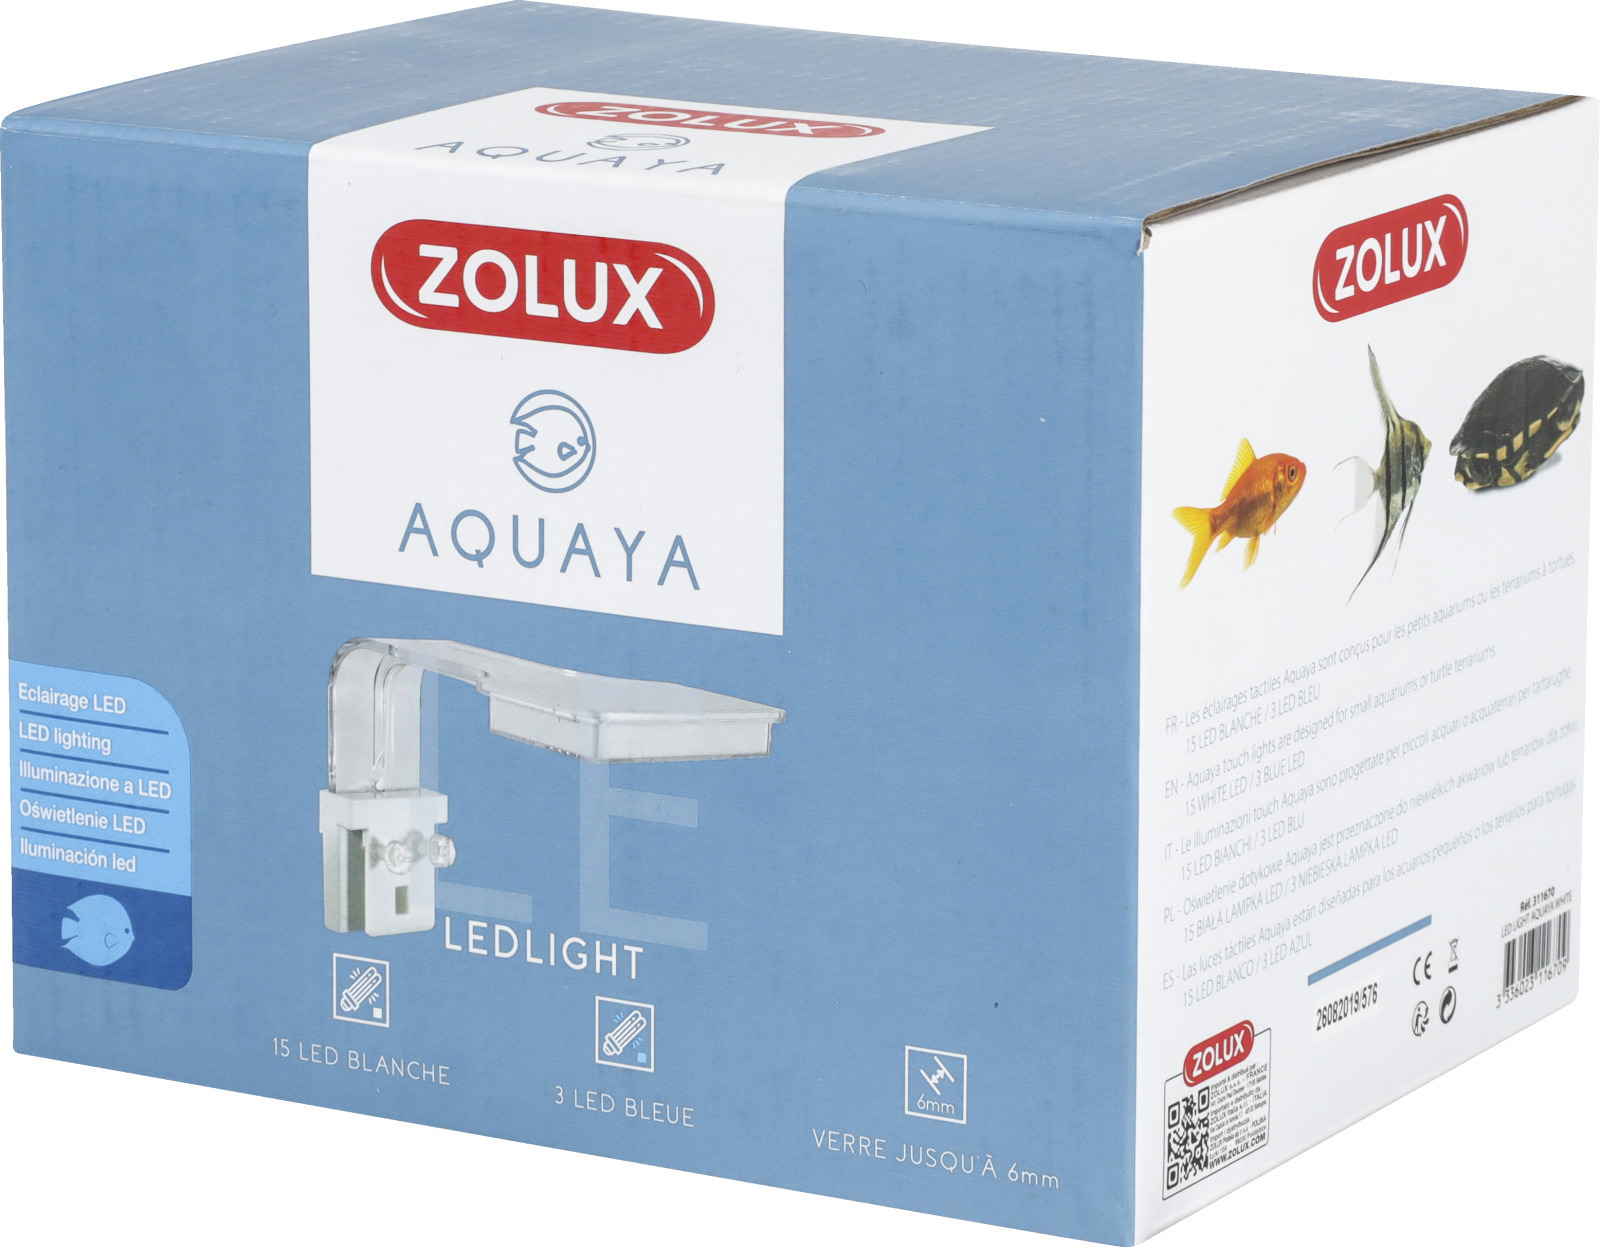 ZOLUX Aquaya LED Light White lampe d\'éclairage 3,6 W pour aquarium d\'eau douce et aquaterrarium